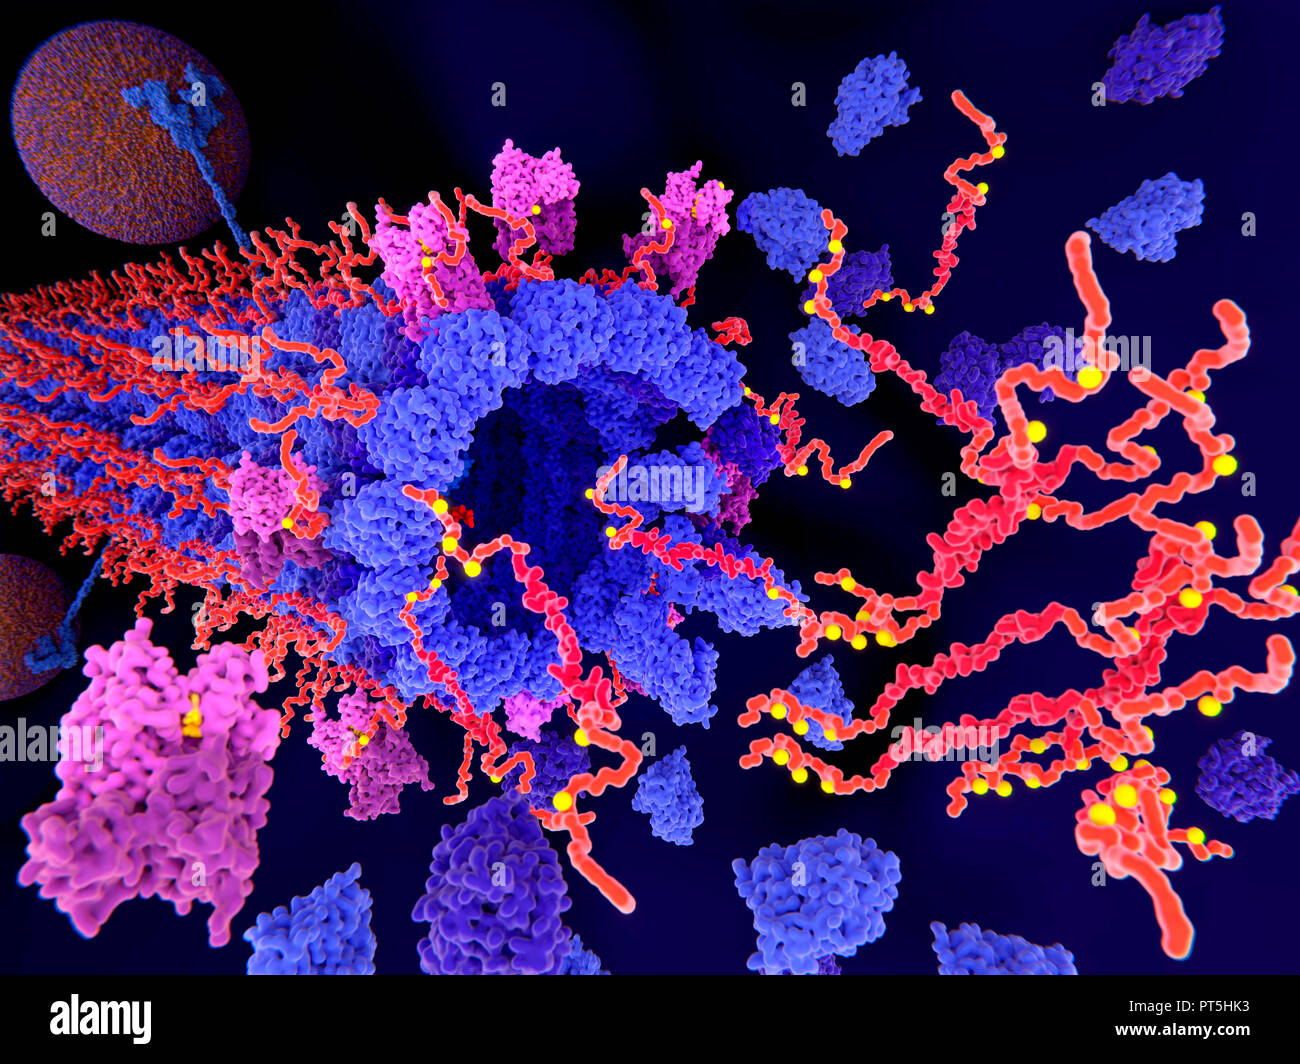 La protéine tau dans la maladie d'Alzheimer,illustration.la phosphorylation pathologique (jaune) de protéines tau (rouge-orange) par des kinases (bleu-violet) influent sur les cellules nerveuses dans ce qu'on appelle un enchevêtrement neurofibrillaire.Cette illustration montre les concentrations de protéines tau pathologiques causant la désintégration d'une structure cylindrique (microtubules).Le transport des vésicules synaptiques (sphères orange-bleu,l'un en haut à gauche) est aussi interrompue.Un enchevêtrement neurofibrillaire est constitué d'agrégats et de fibres insolubles anormale de la protéine tau. Banque D'Images